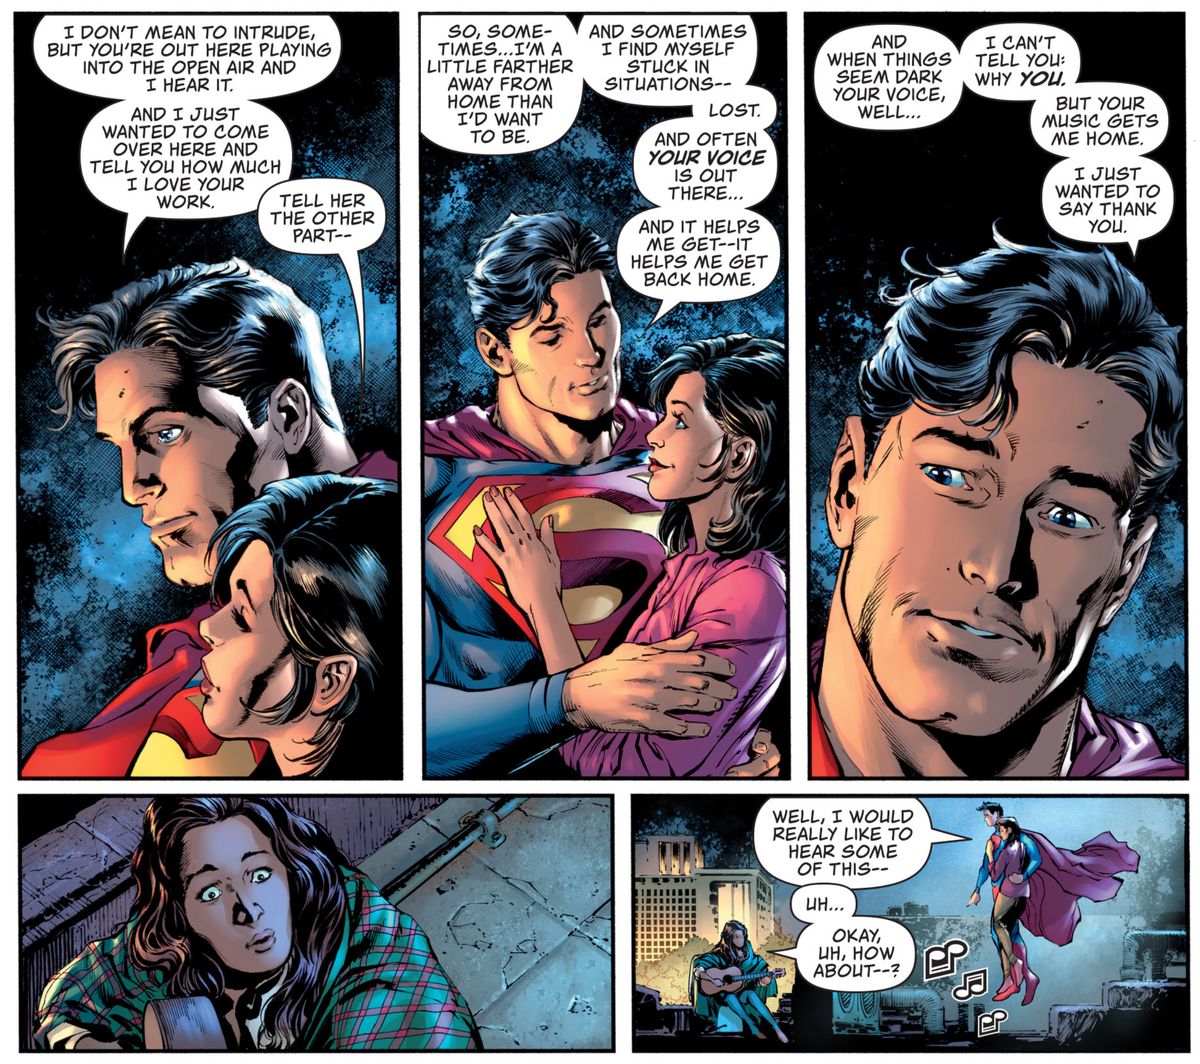 Superman e Lois Lane fanno visita a una donna che suona la chitarra sul tetto di Metropolis.  Superman le dice che può spesso ascoltarla con il suo super udito e che il suo modo di suonare lo ha aiutato.  “A volte mi ritrovo bloccato in situazioni - perso.  E spesso la tua voce è là fuori ... e mi aiuta a tornare - mi aiuta a tornare a casa 